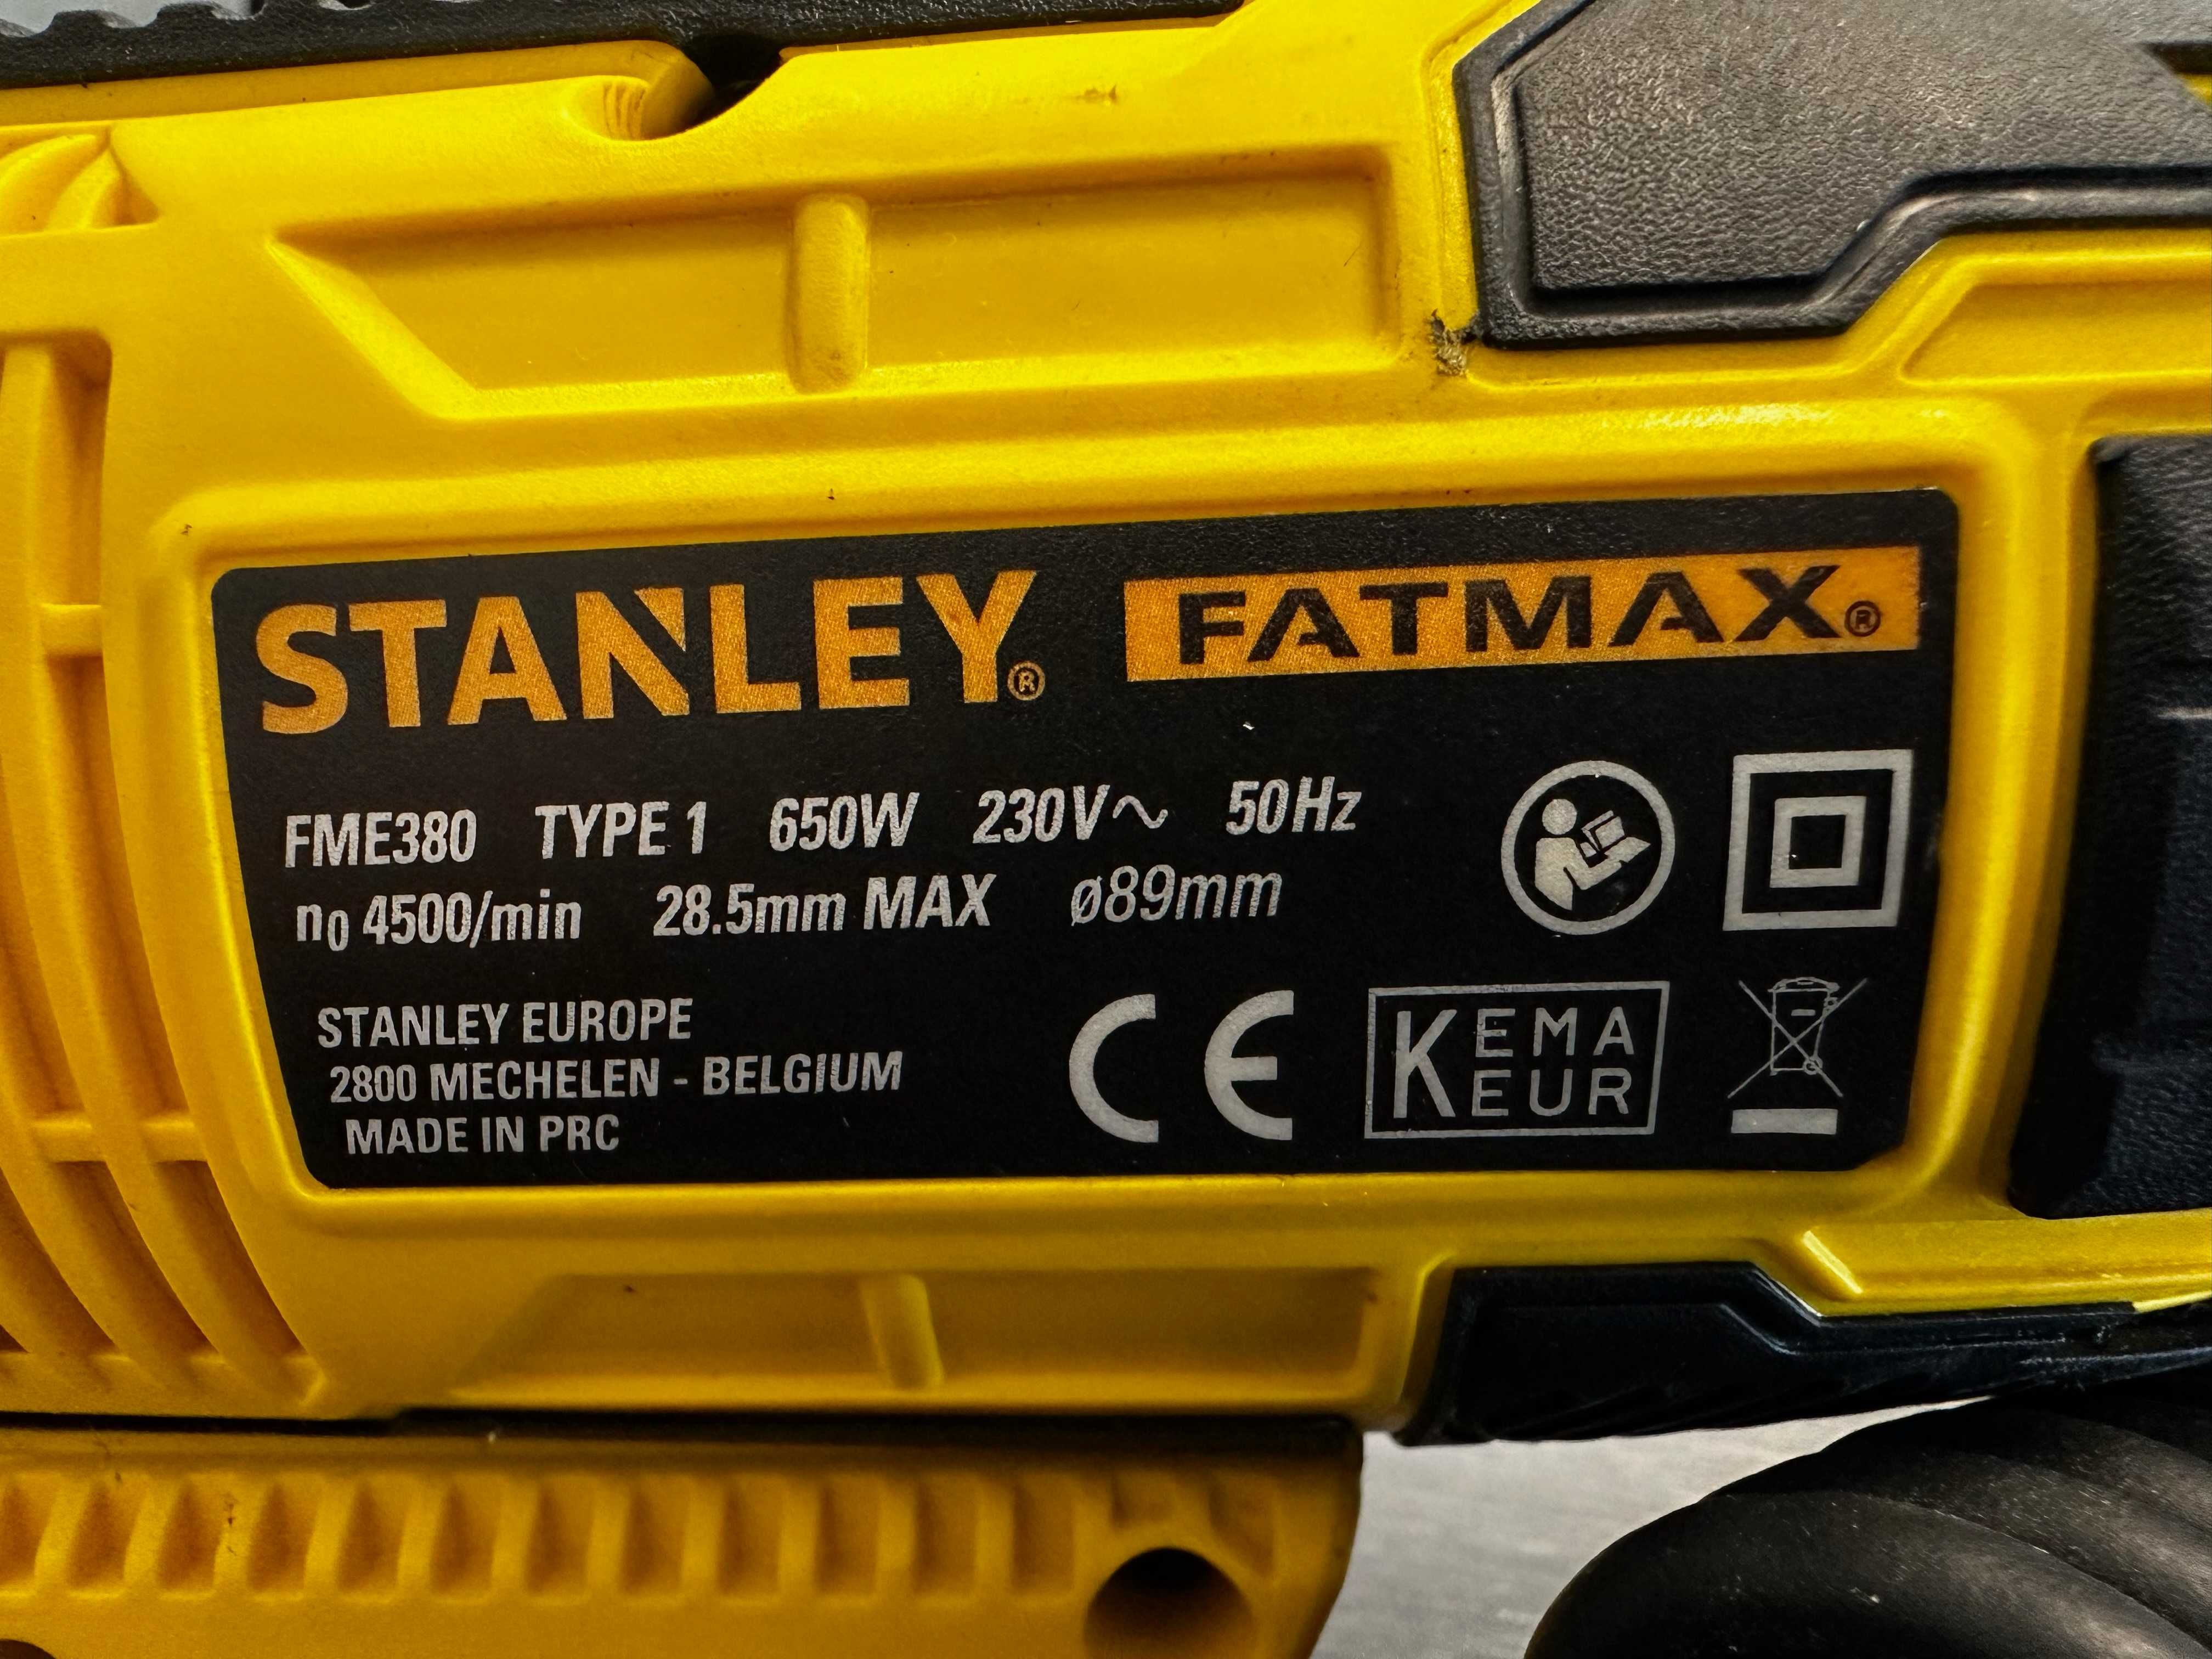 Stanley Fatmax FME380 Multi Pilarka 650W